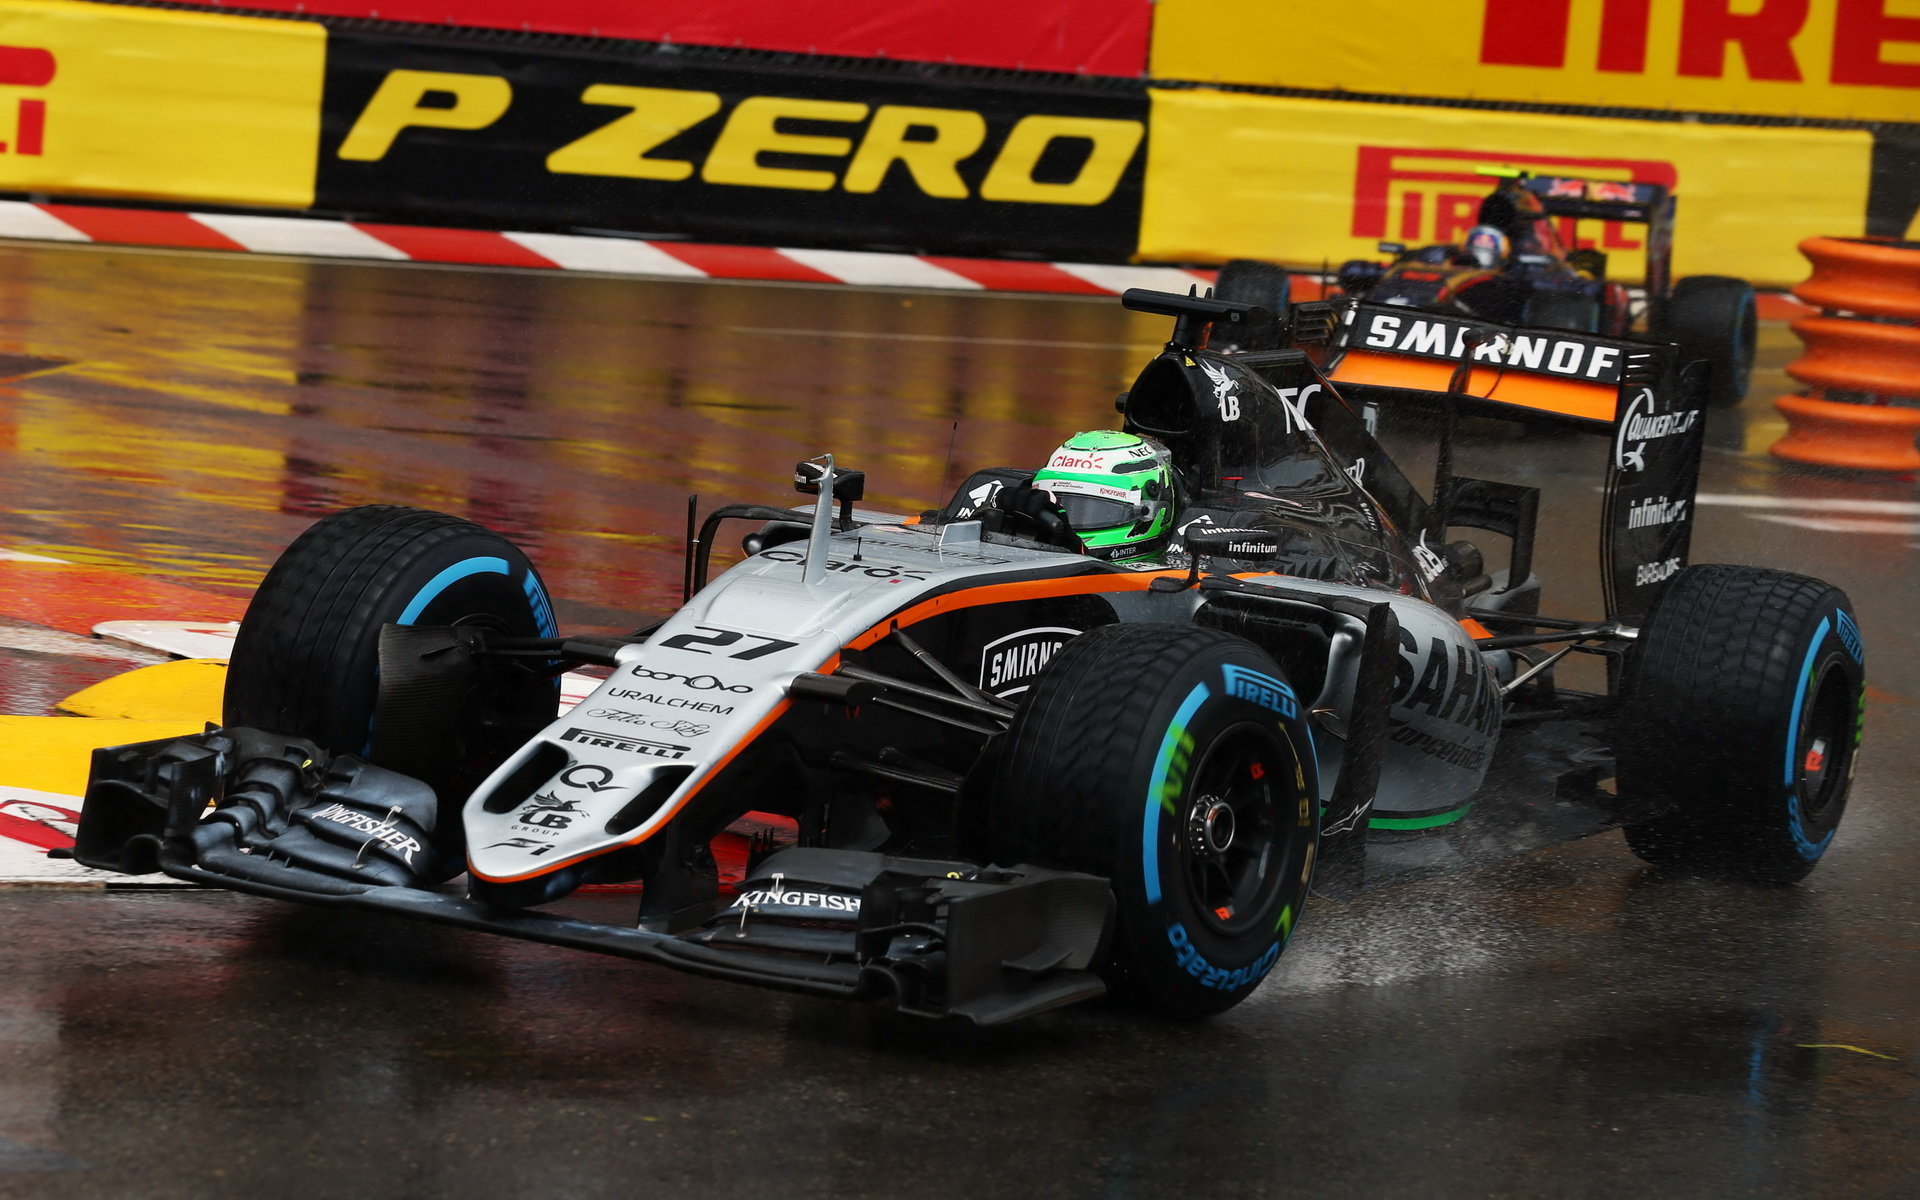 Force India v Monaku špatně načasovala první zastávku Nica Hülkenberga